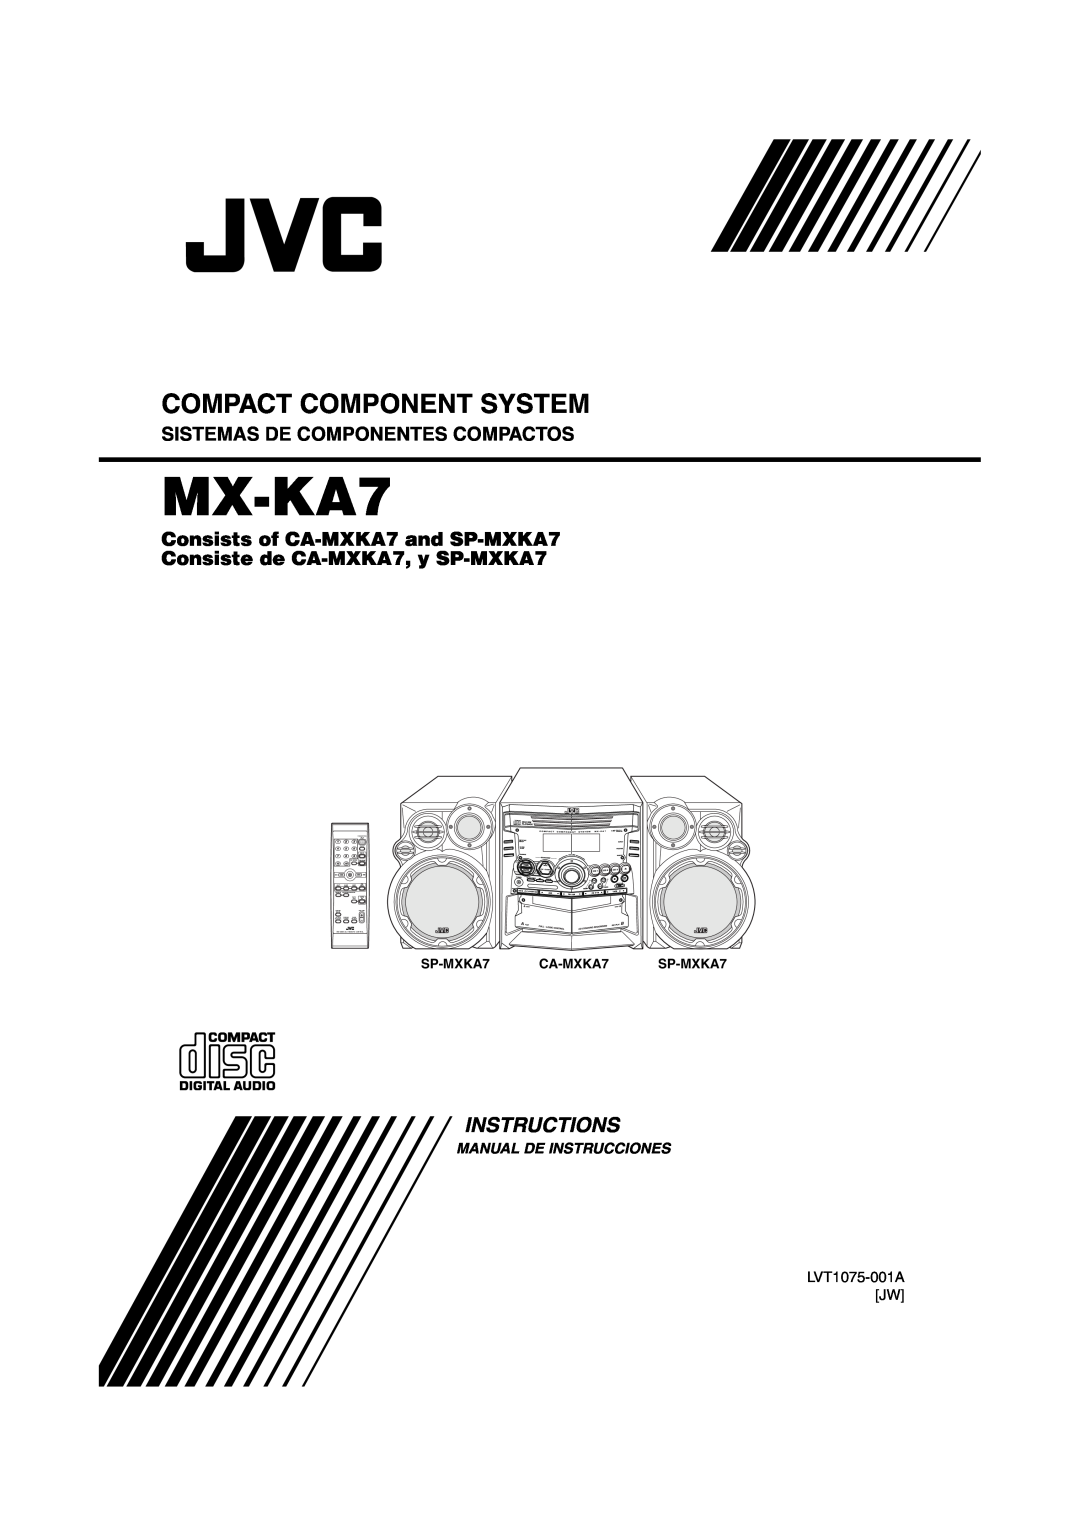 JVC MX-KA7 manual Instructions, Compact Component System, Sistemas De Componentes Compactos, Manual De Instrucciones 